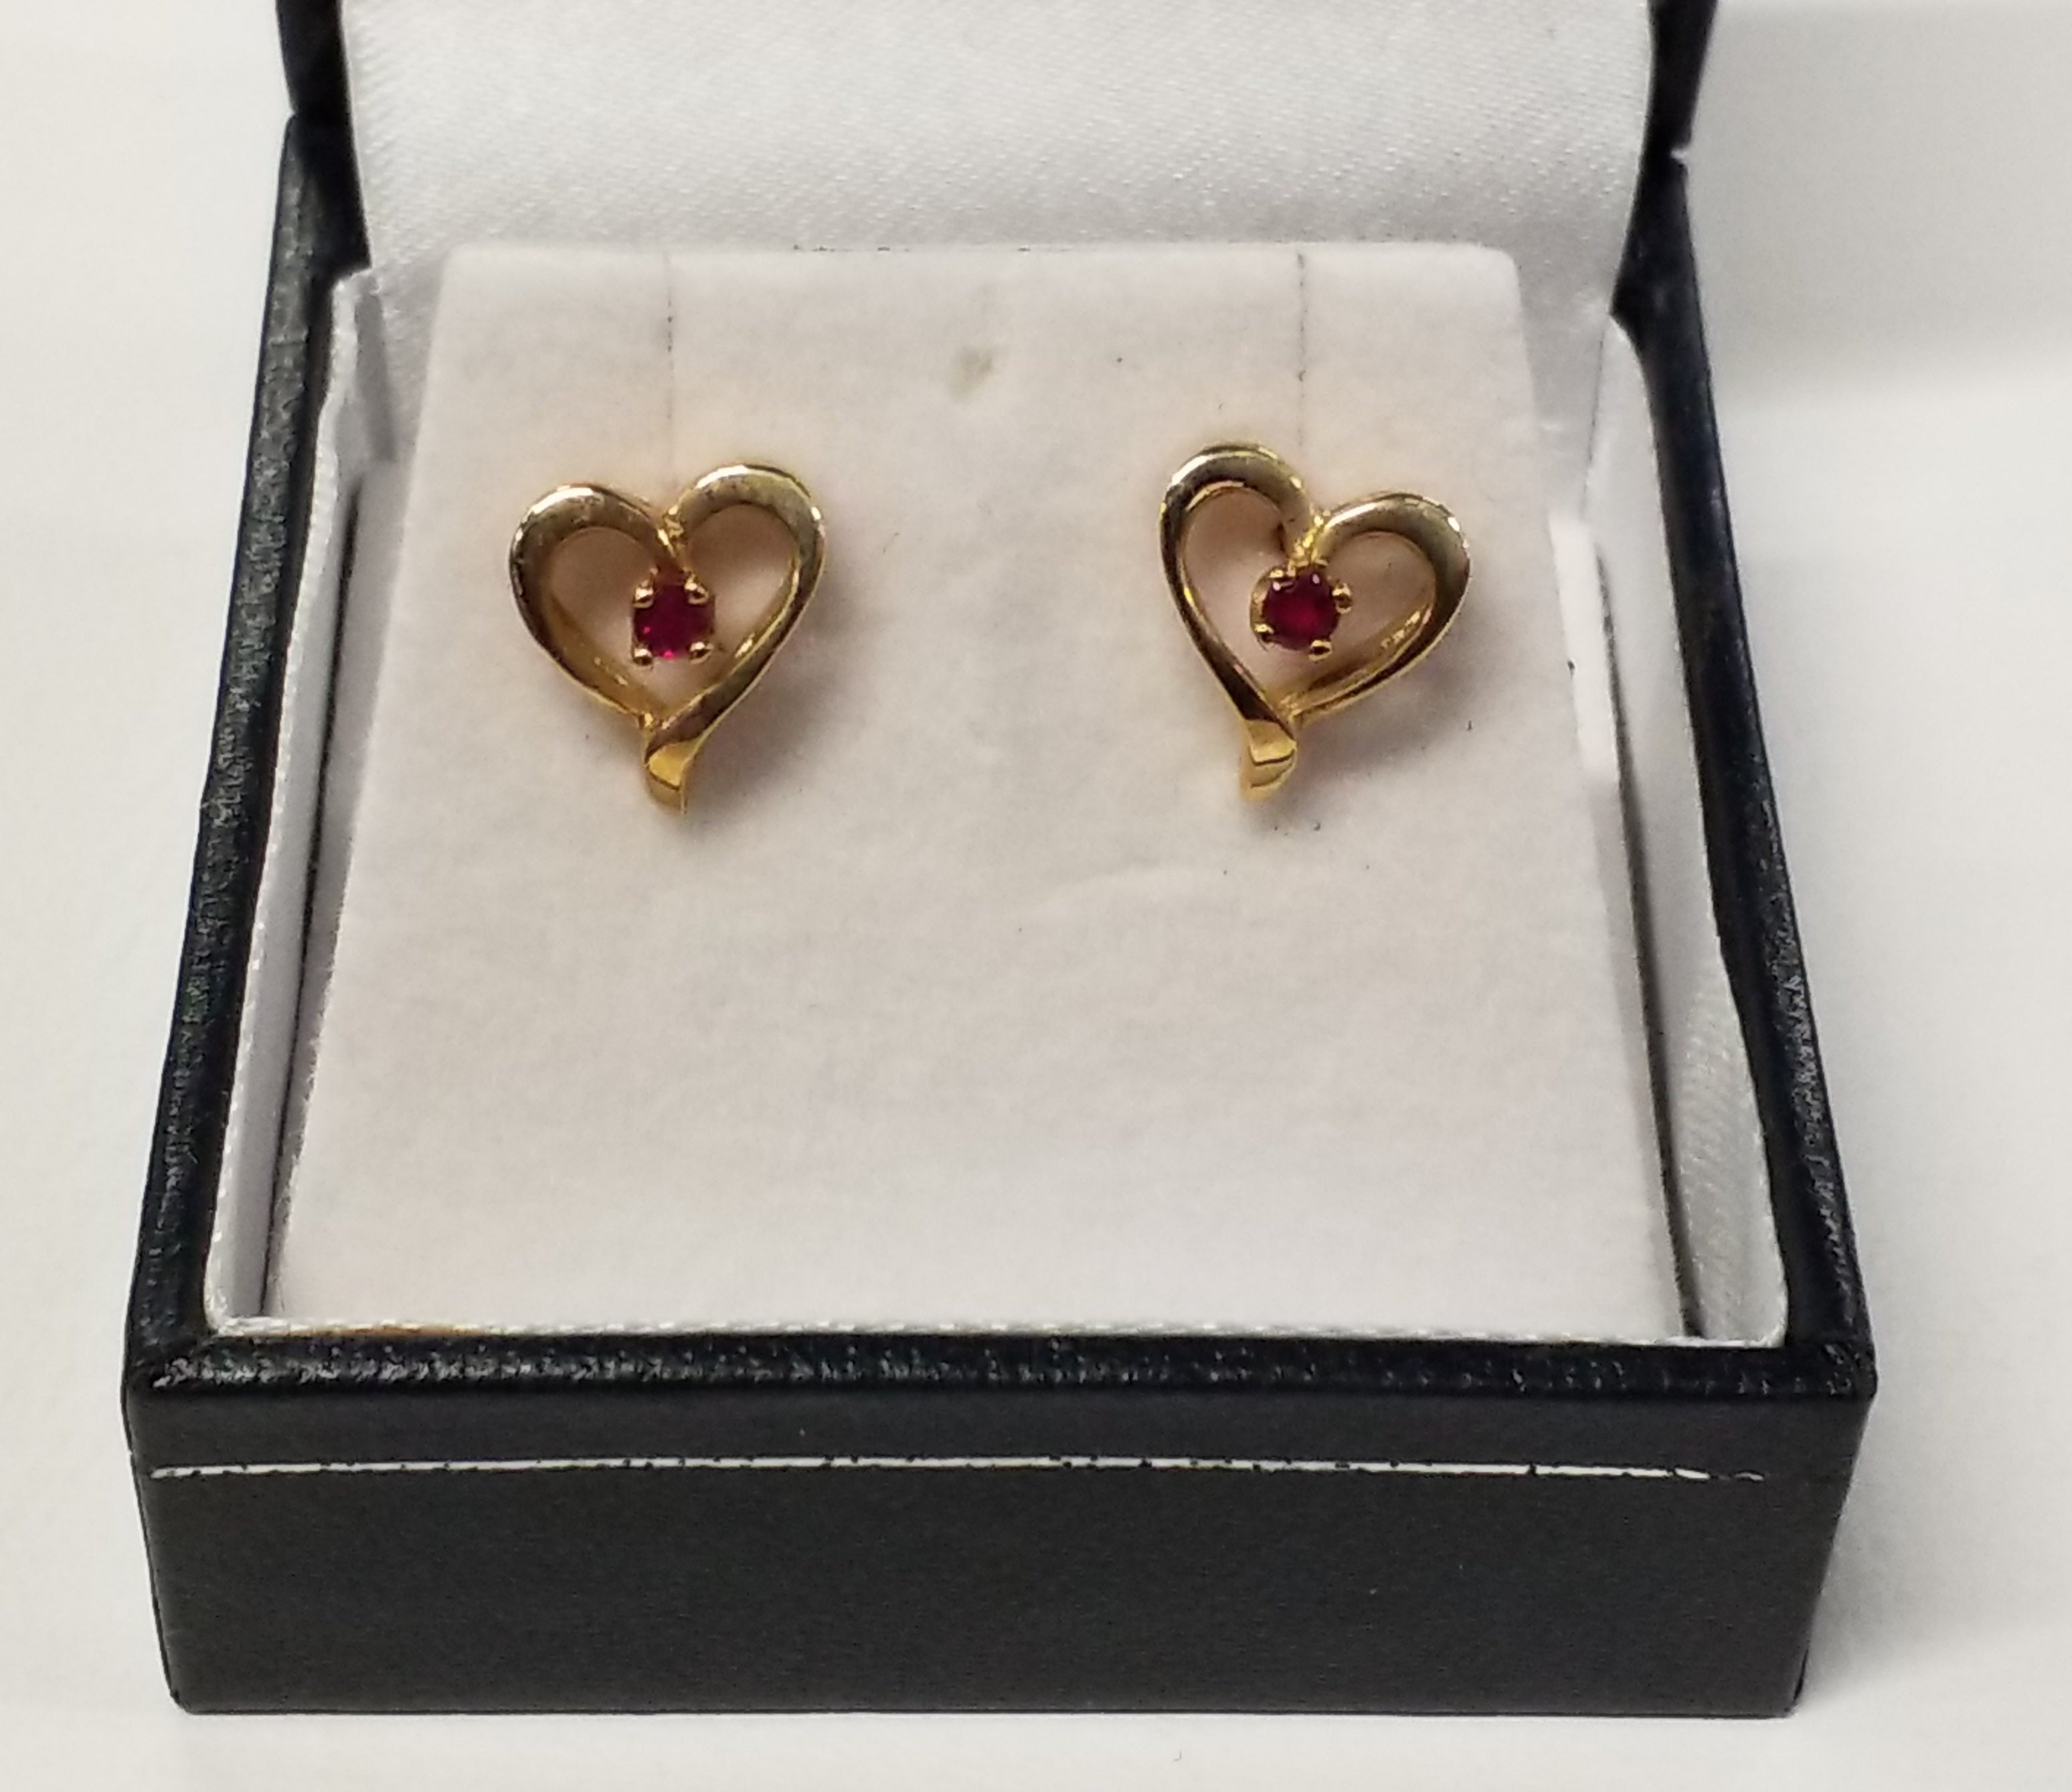 Two Round Cut Ruby Earrings - Heart